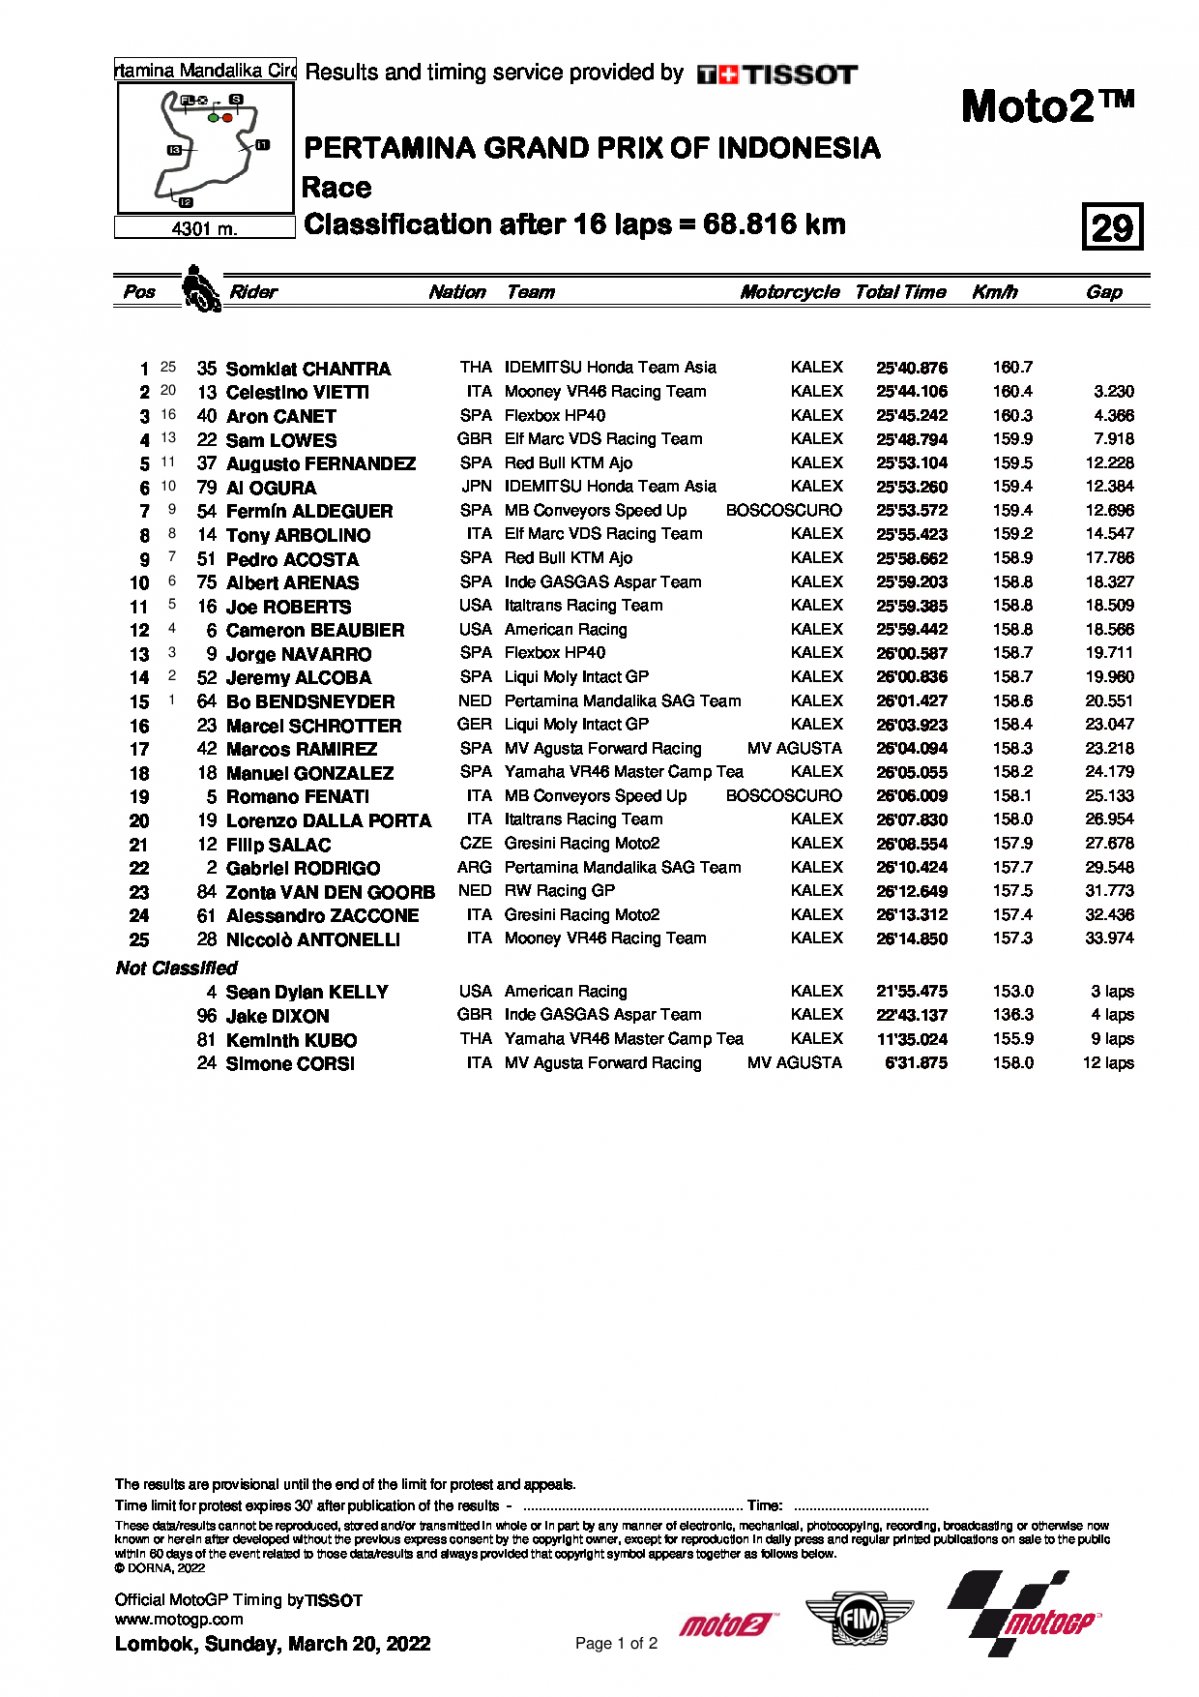 Результаты Гран-При Индонезии Moto2 (20/03/2022)